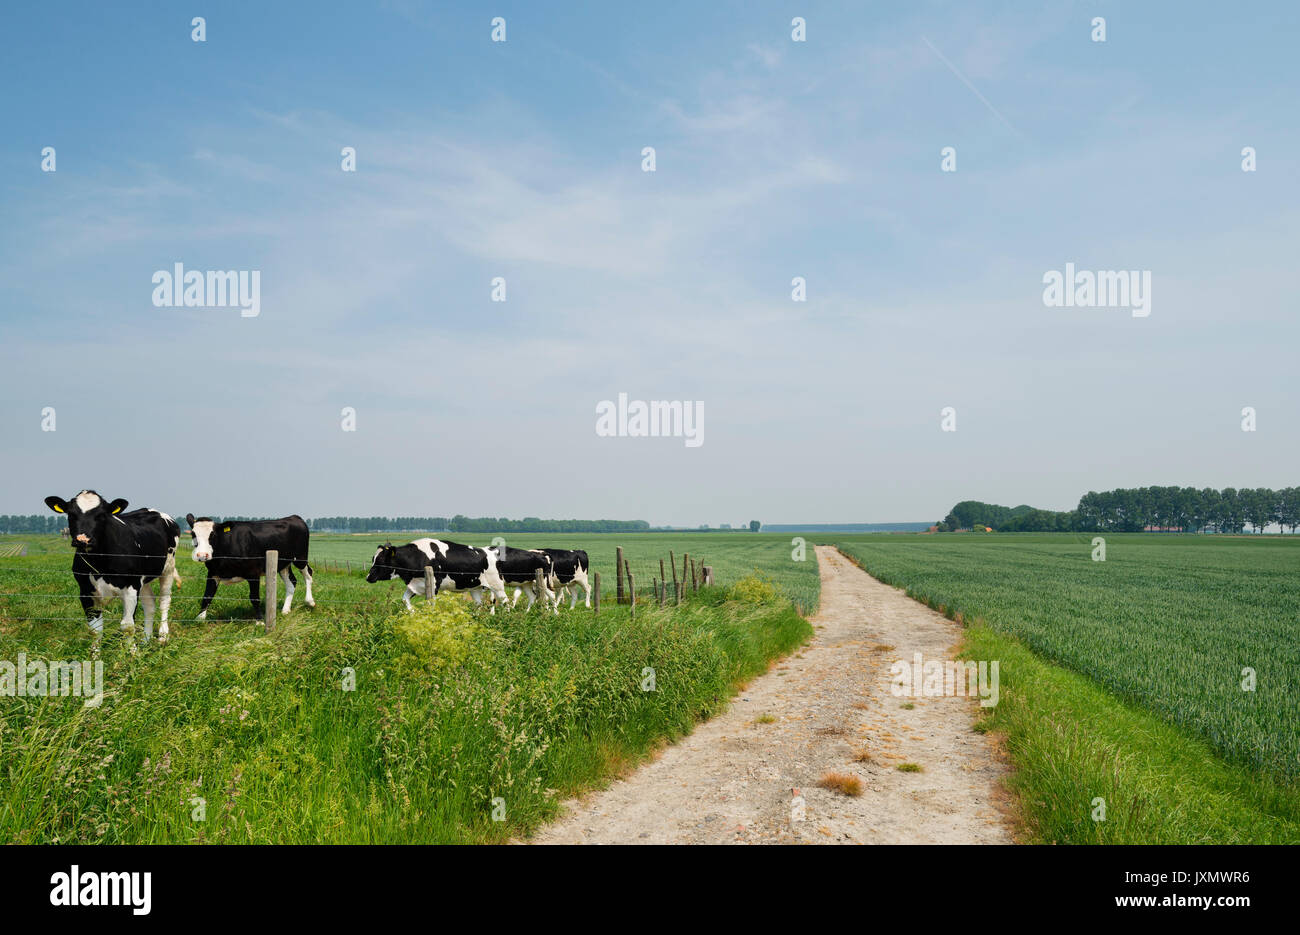 Cows grazing in field, Kruisdijk, Zeeland, Netherlands, Europe Stock Photo